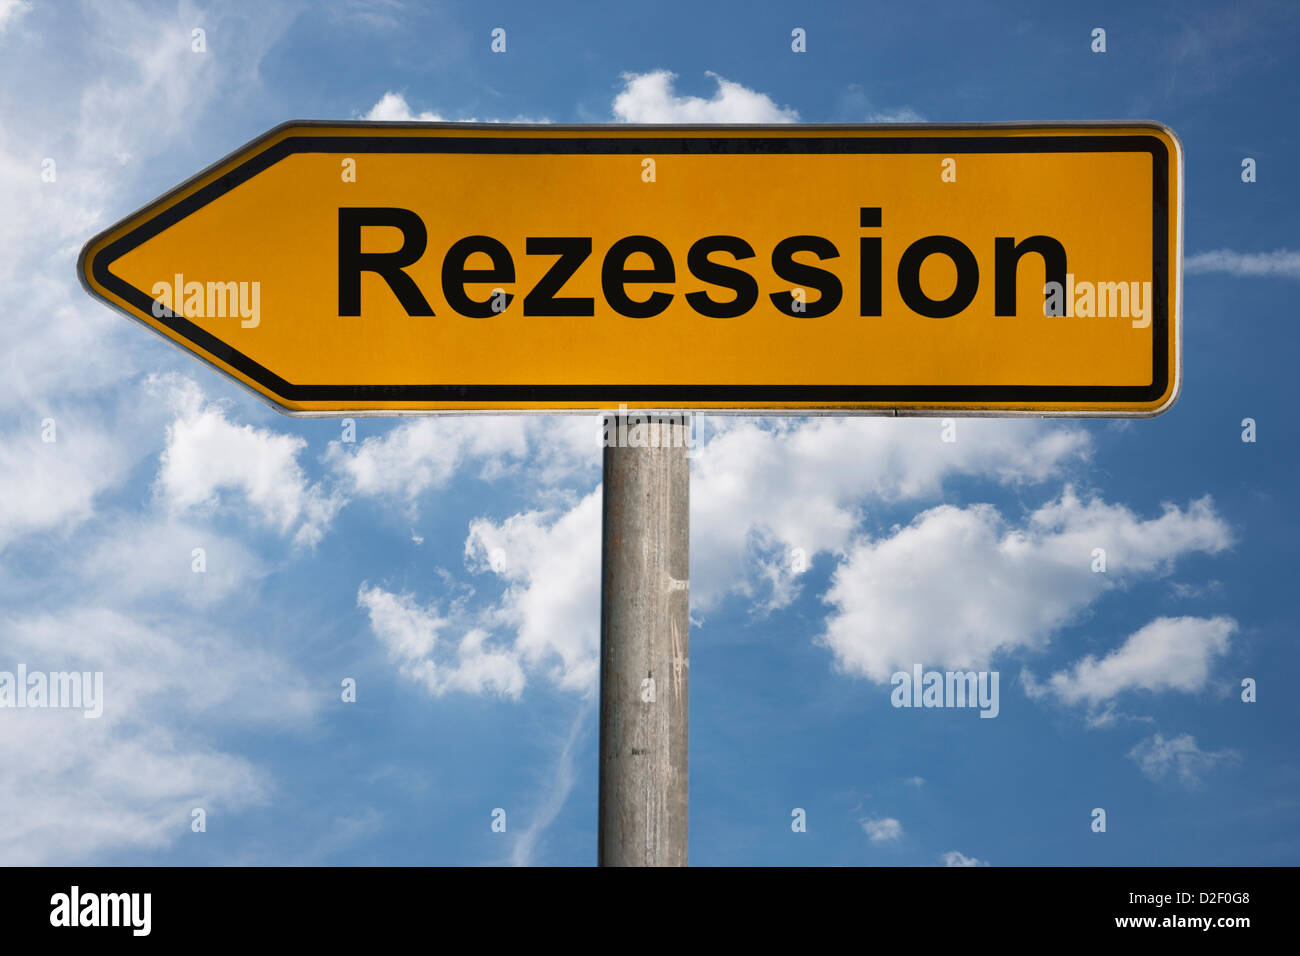 Detailansicht eines Wegweisers mit der Aufschrift Rezession | Dettaglio foto di un cartello con la scritta in tedesco flessione Foto Stock